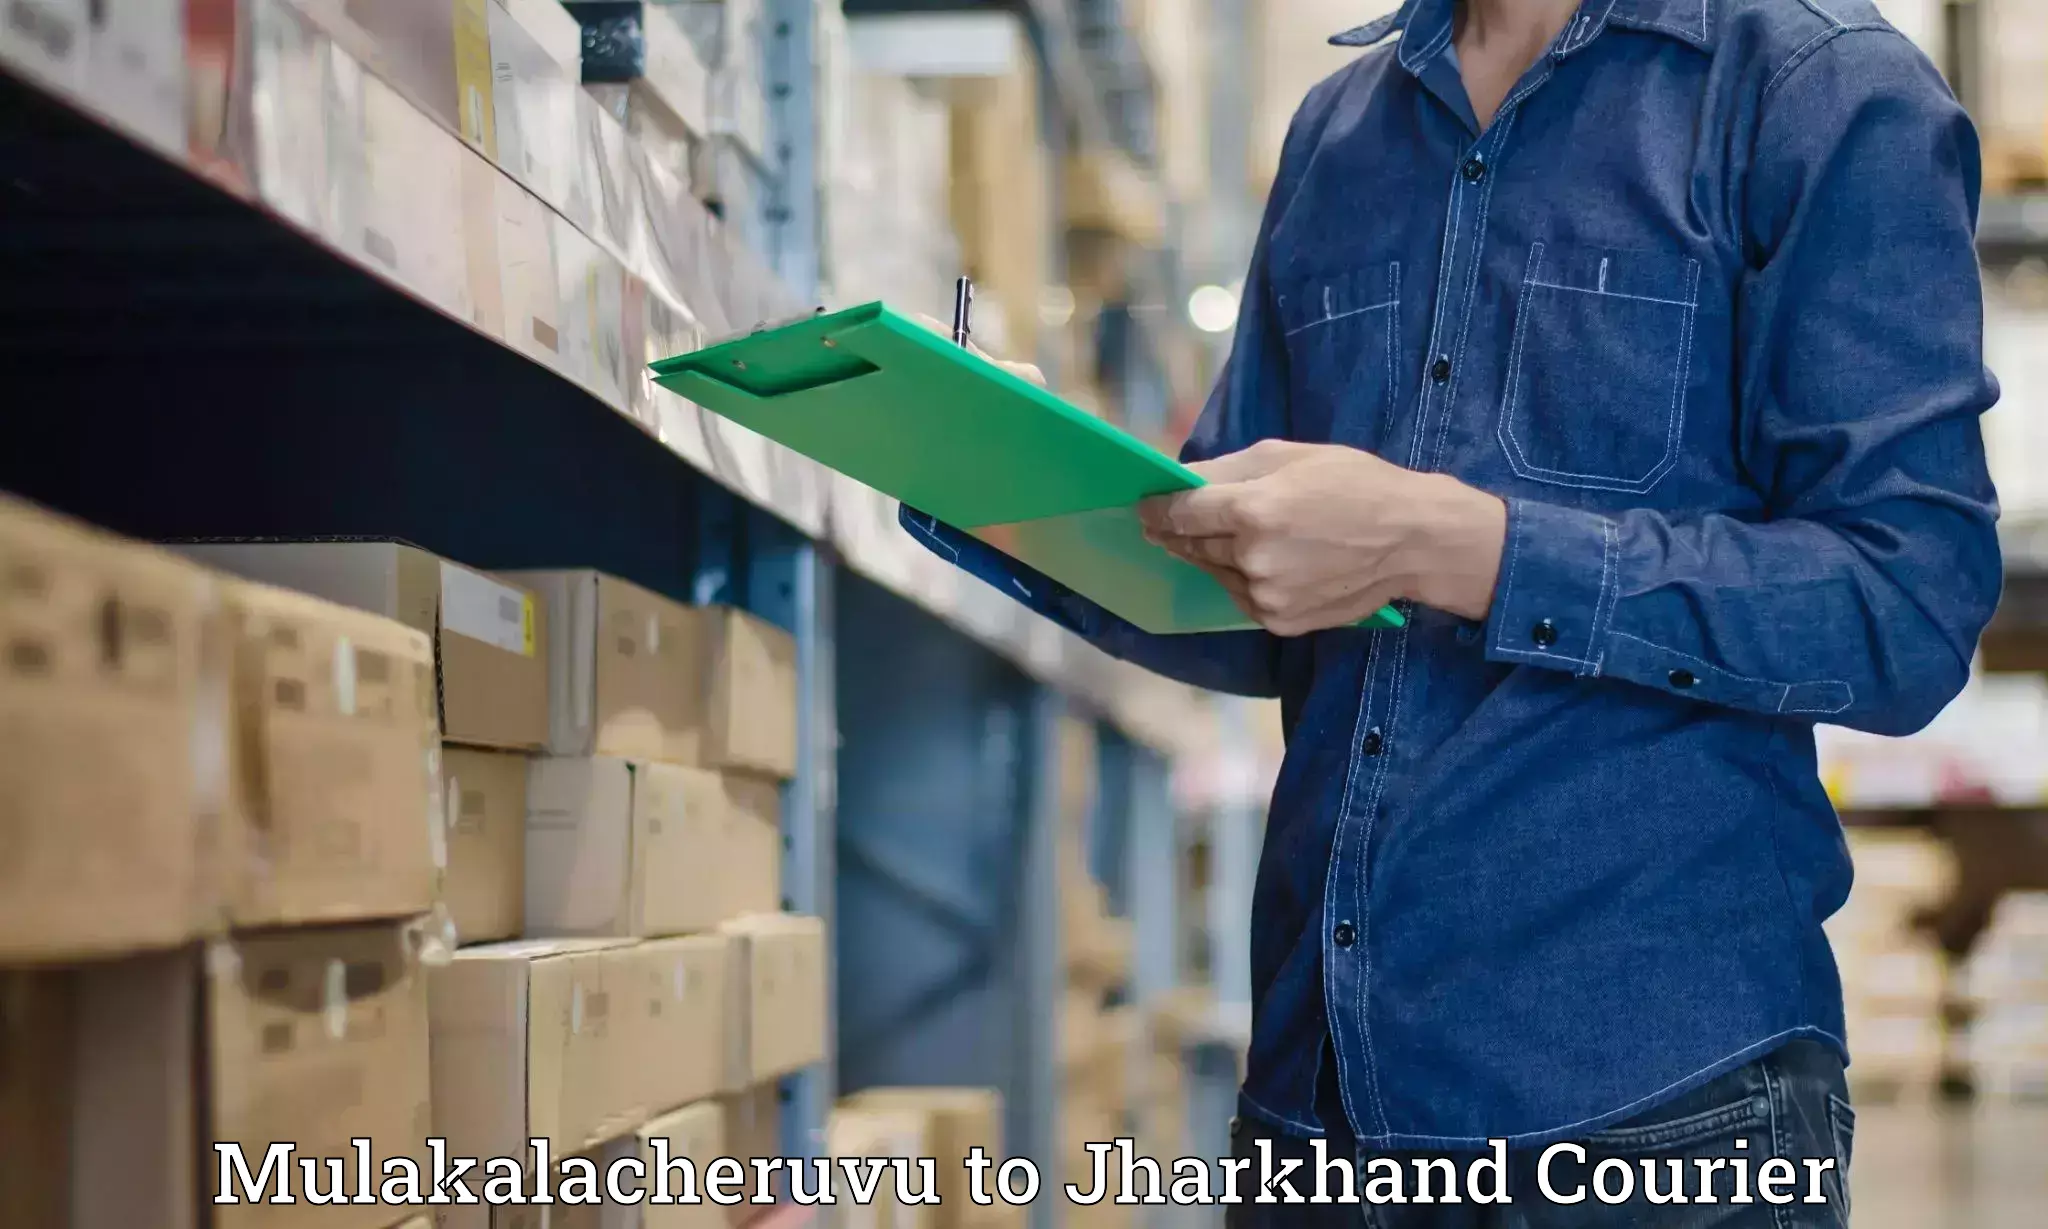 On-call courier service Mulakalacheruvu to Jharkhand